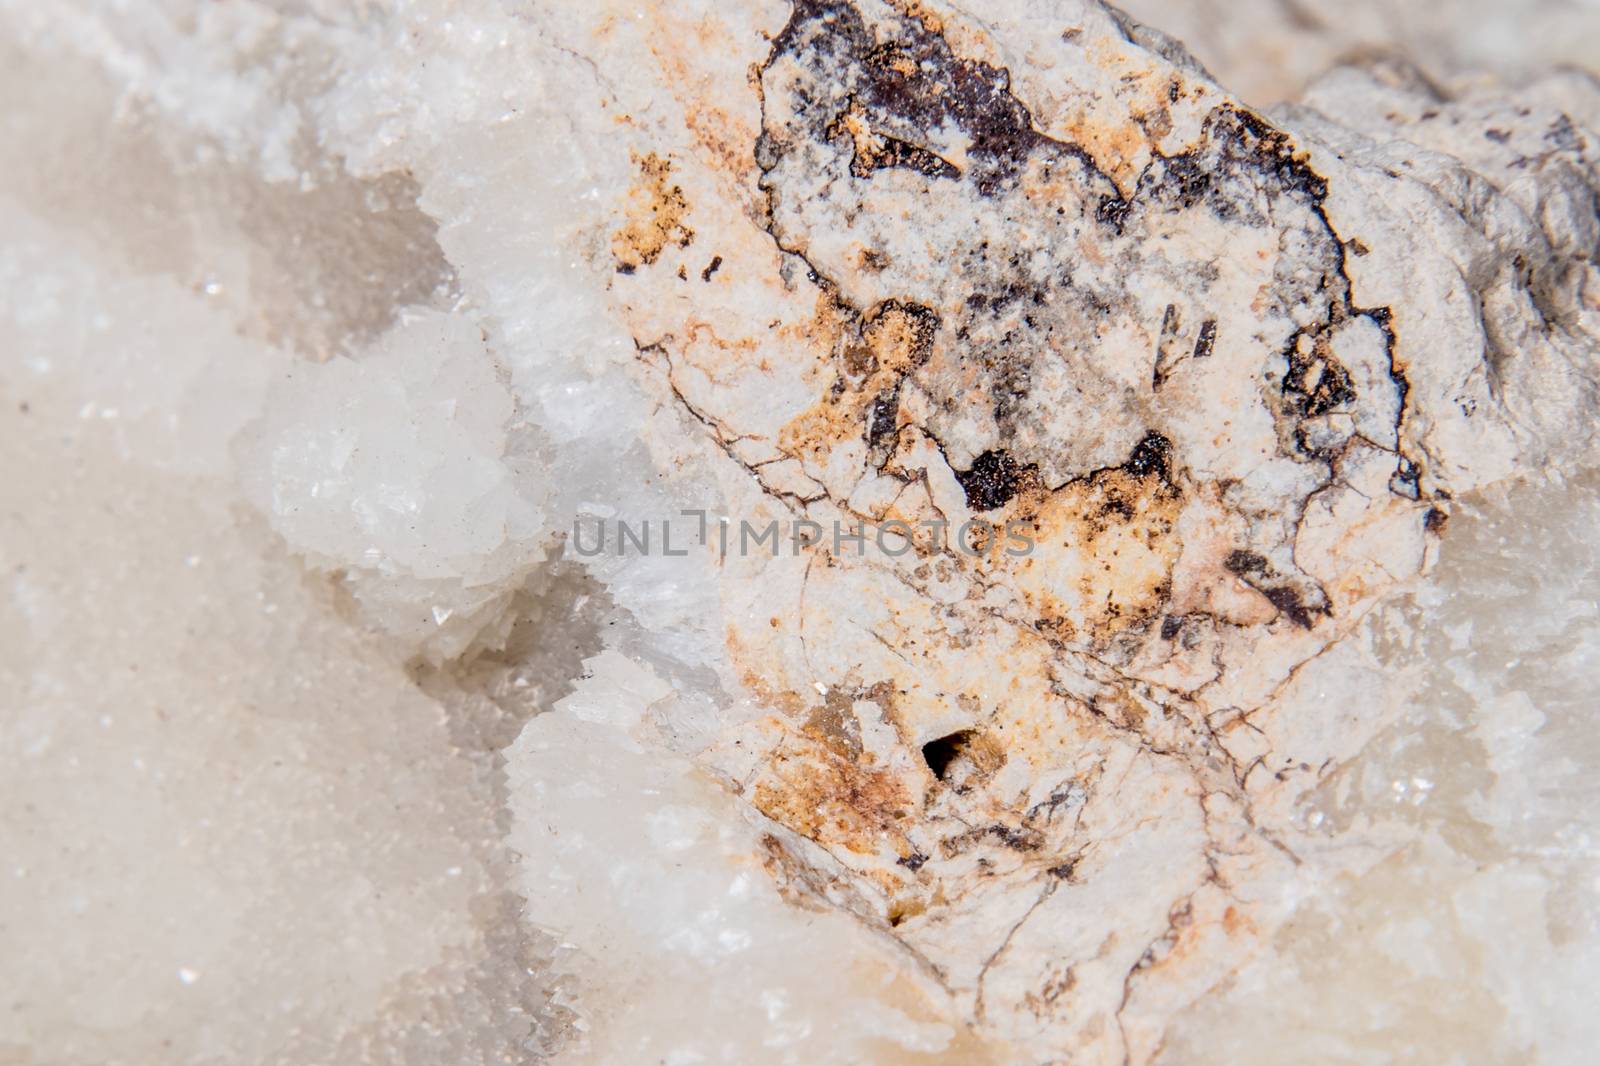 Kalksinter white gemstone gem jewel mineral precious stone 3 by MXW_Stock